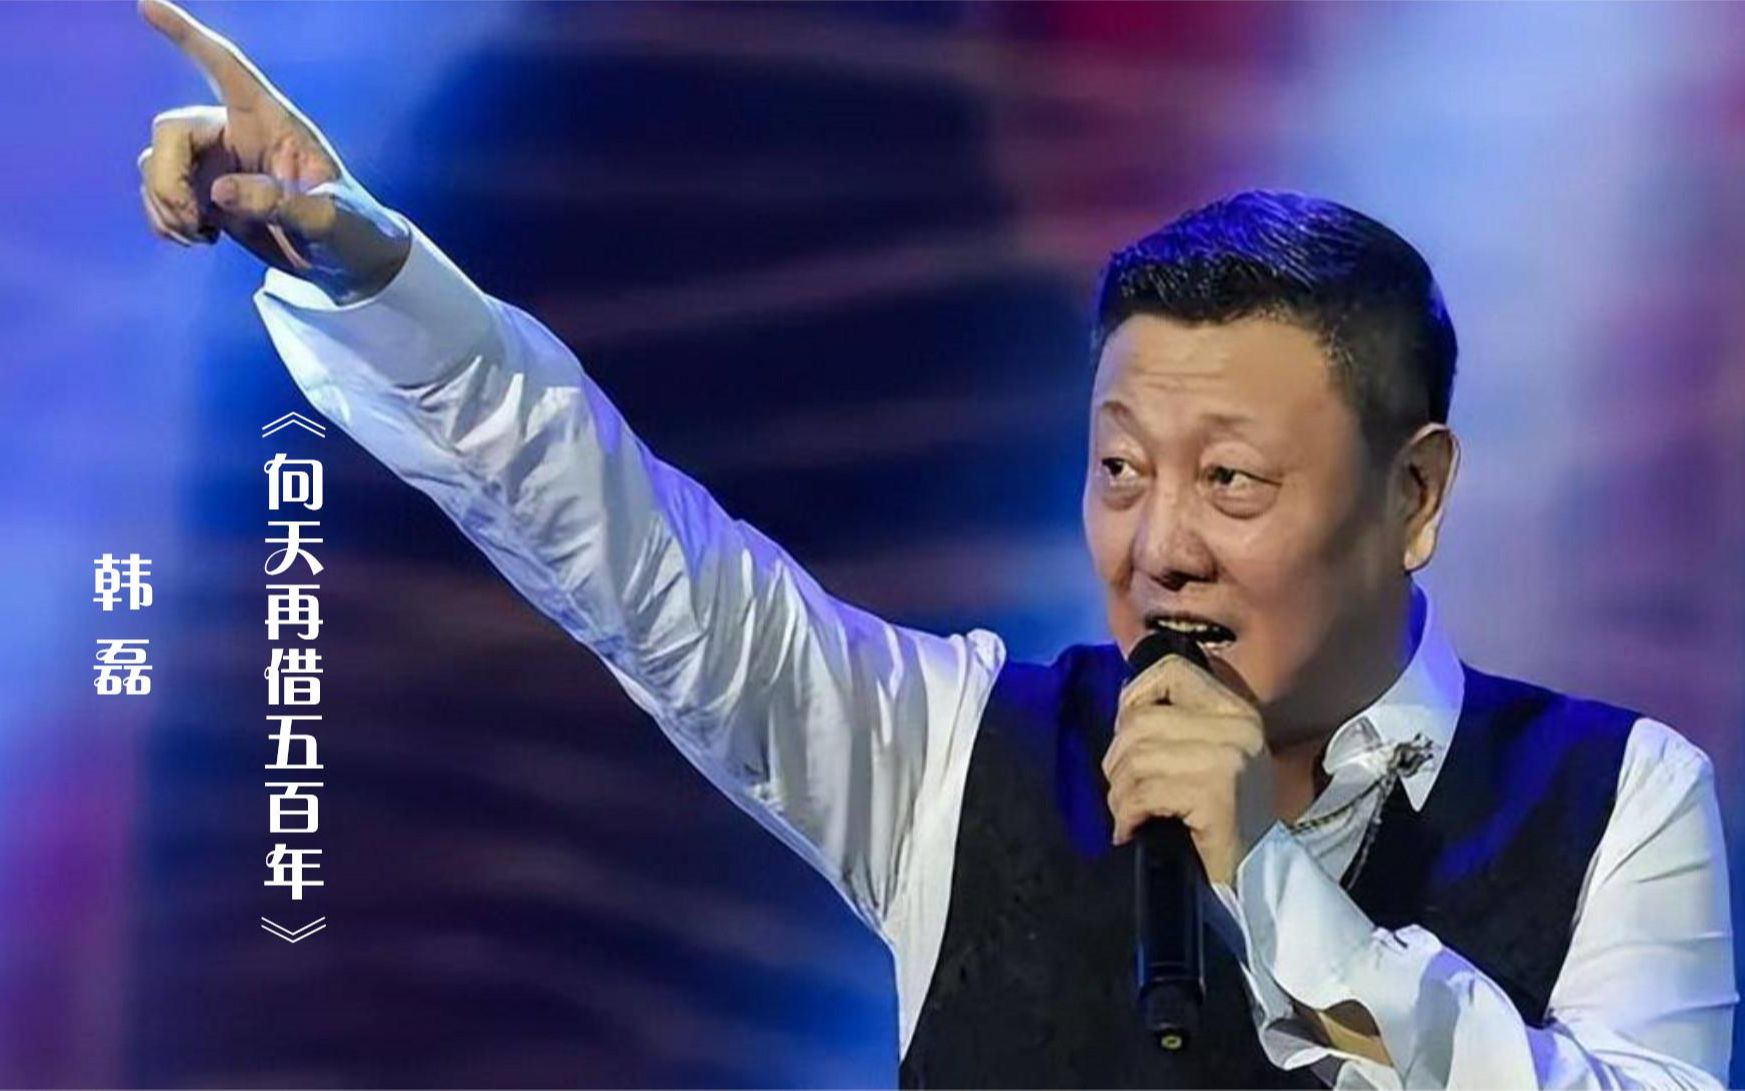 韩磊演唱《康熙王朝》主题曲《向天再借五百年》,荡气回肠!